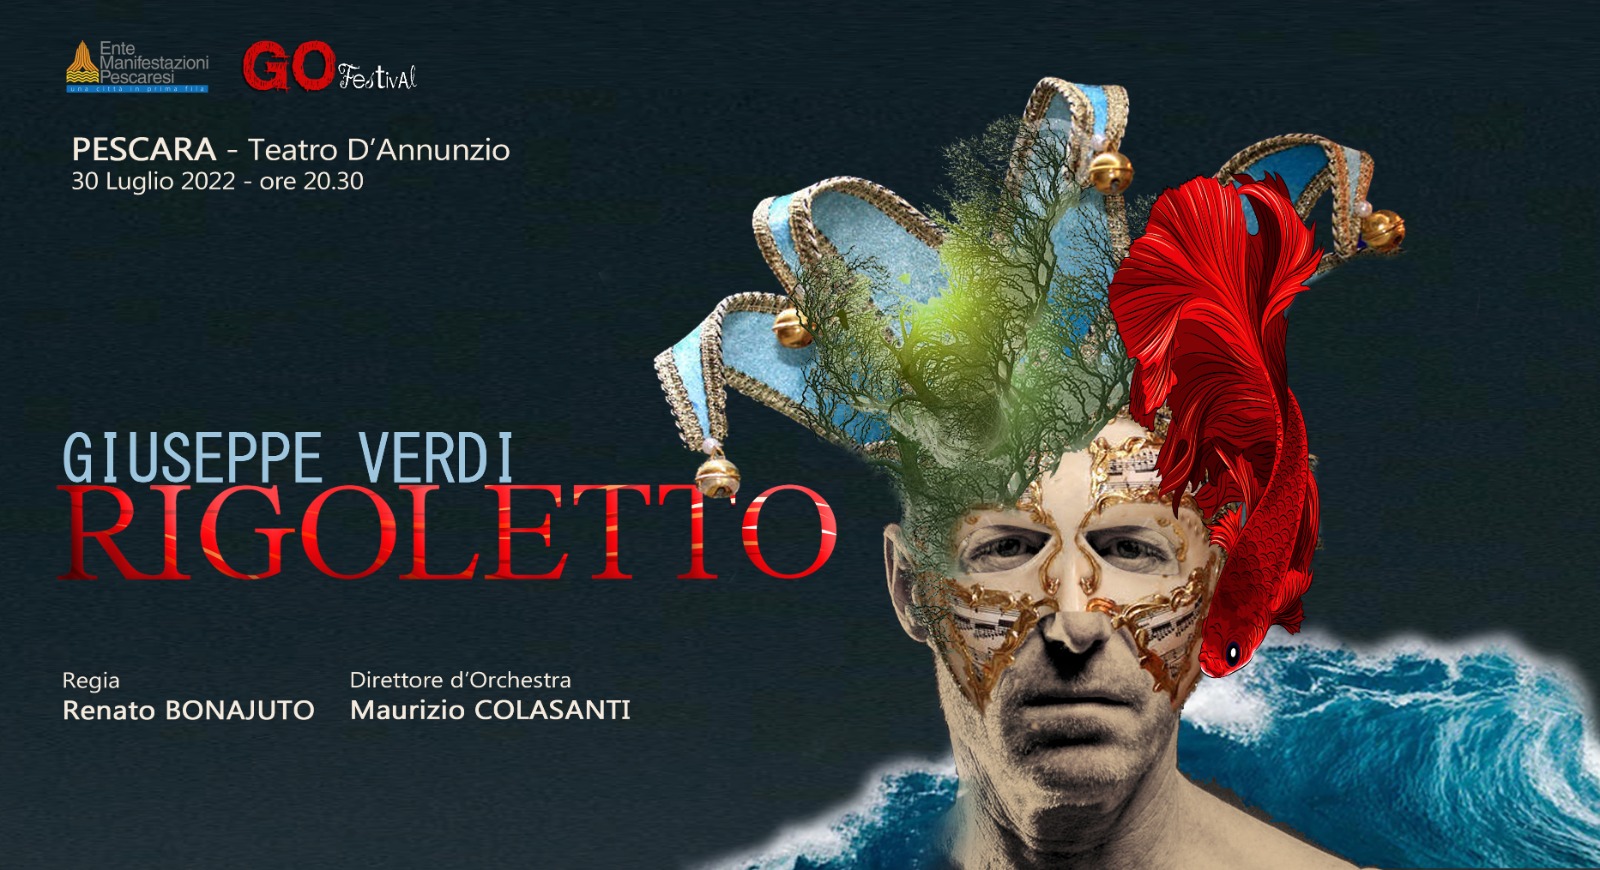 “RIGOLETTO”, Guardiagrele Opera Festival